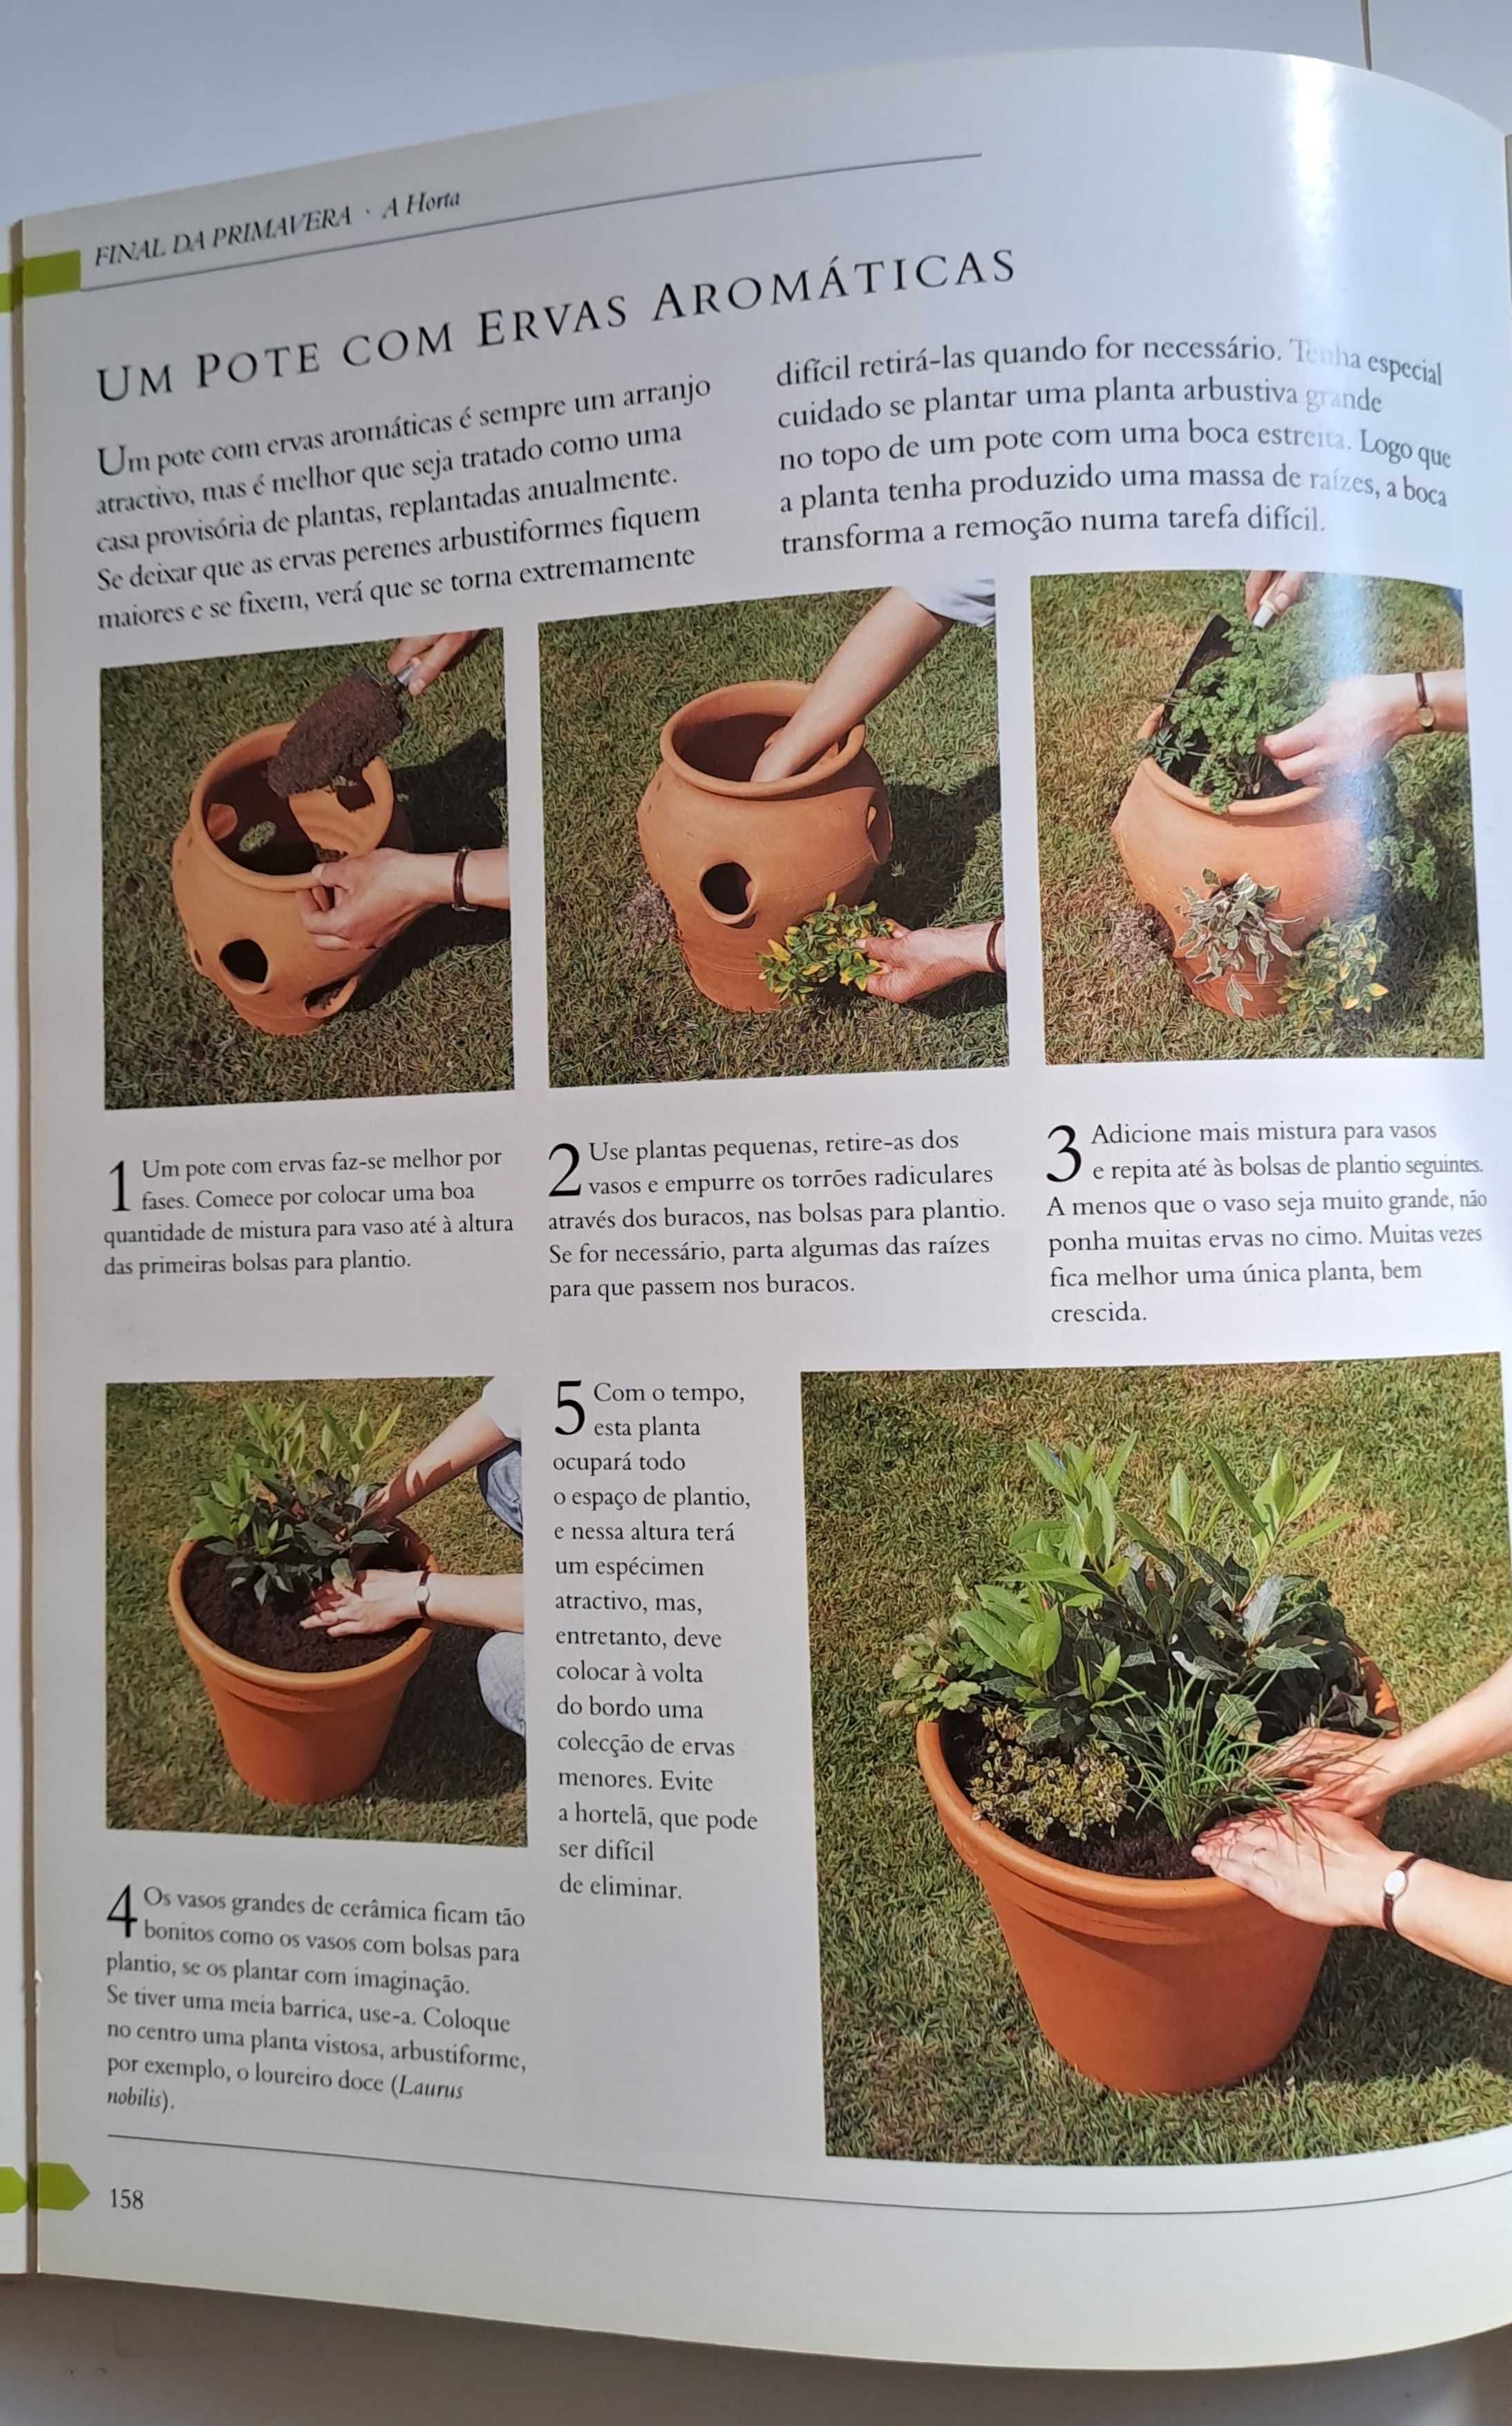 Manual Prático de Jardinagem